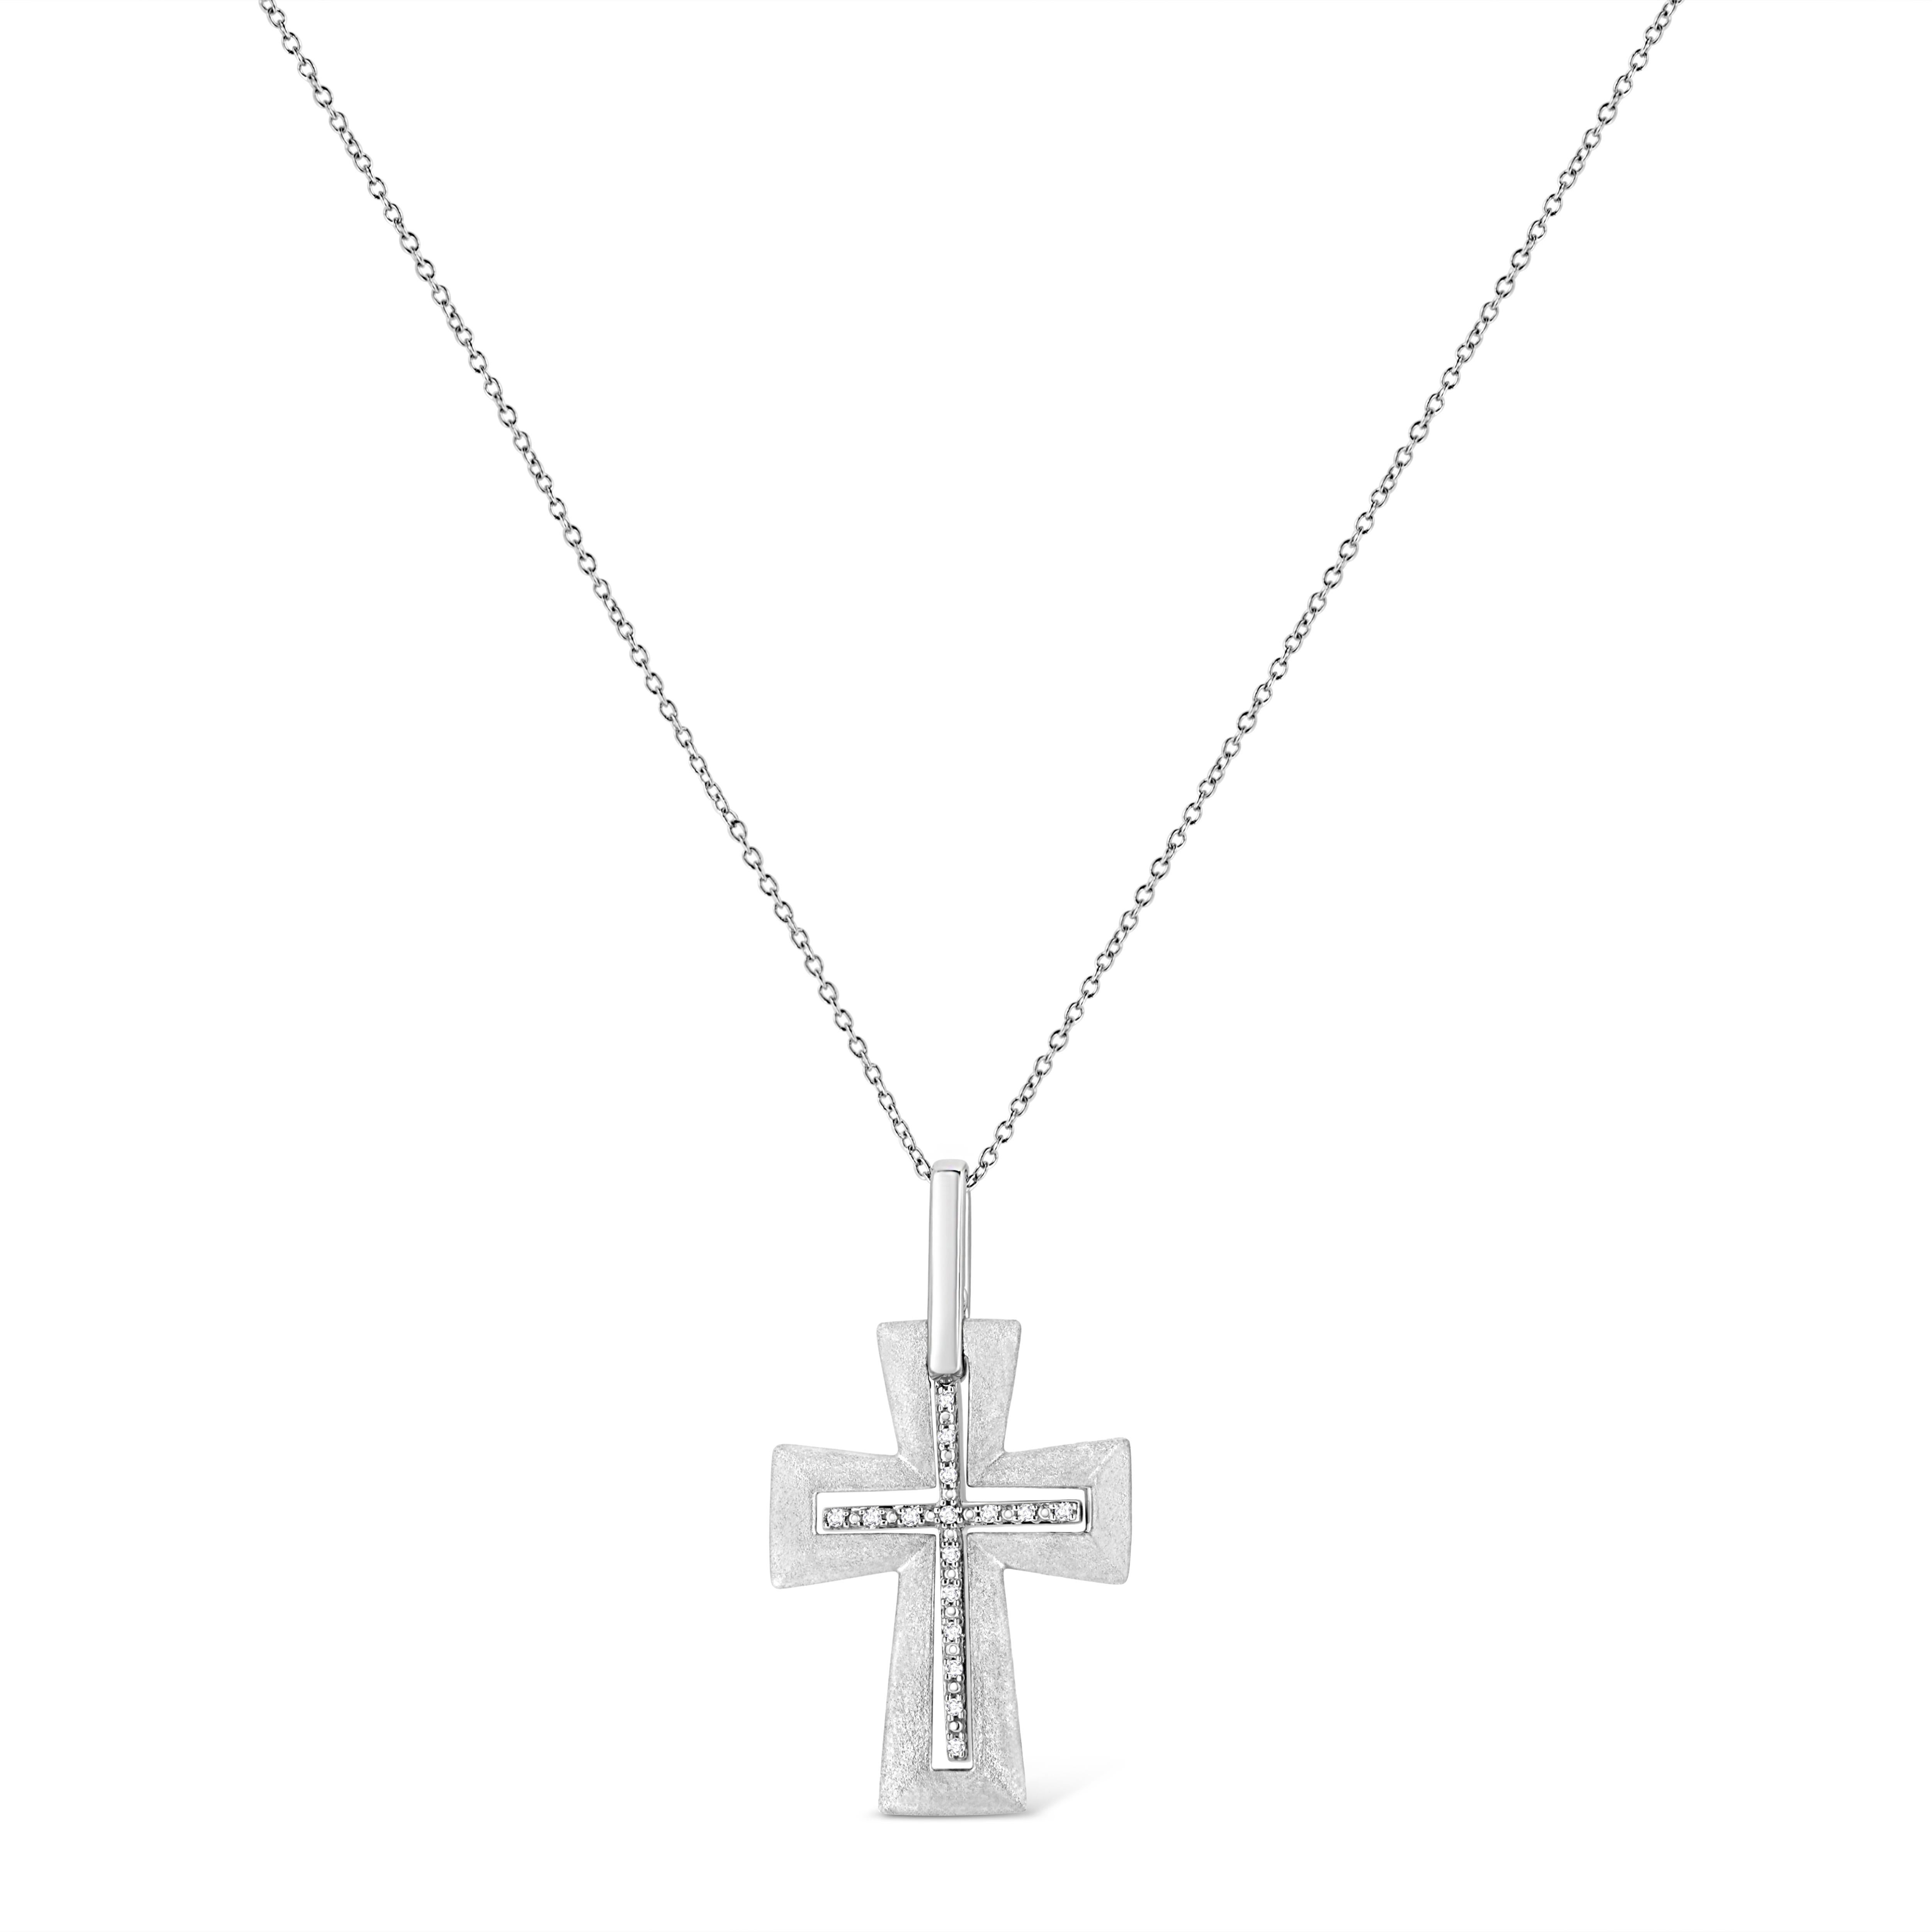 Ce pendentif religieux en forme de croix de diamant est un symbole de foi étincelant. Habillé d'argent sterling étincelant, ce pendentif est orné de 16 radieux diamants ronds sertis à la pointe, disposés autour de la croix. Il est suspendu à une